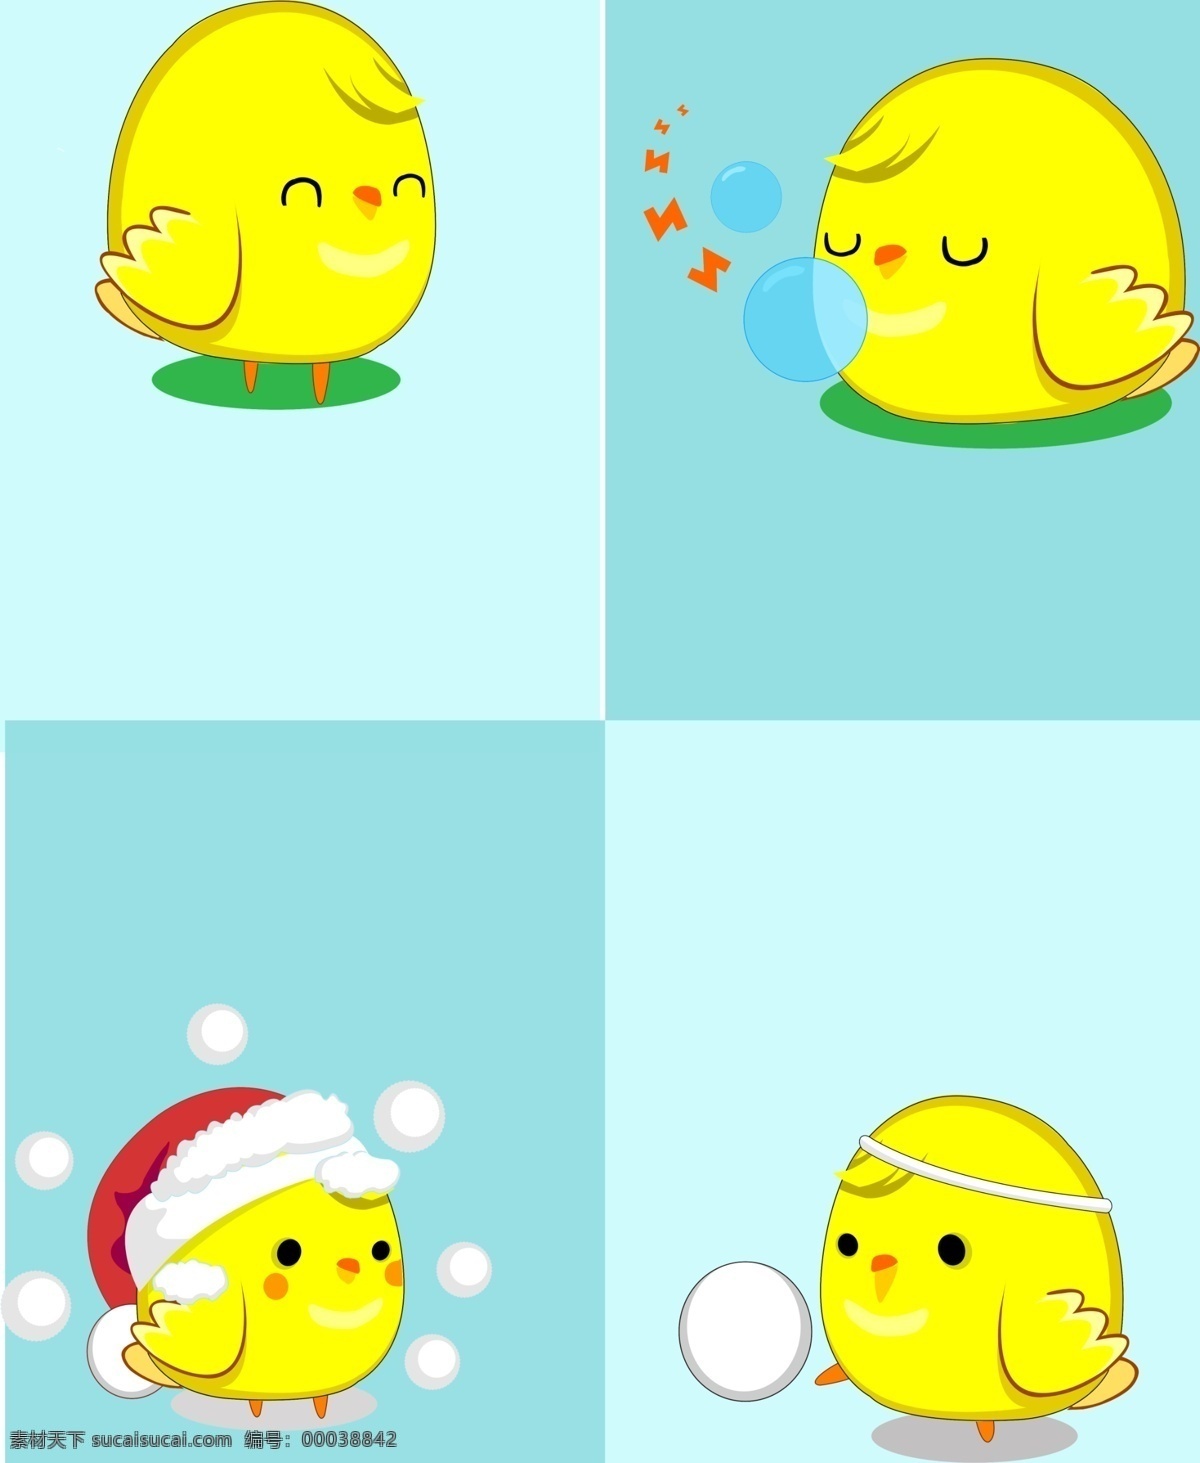 可爱 小鸡 吹泡泡 广告设计模板 圣诞帽 图案 雪球 移门 移门图案 可爱小鸡 小小鸡 源文件 装饰素材